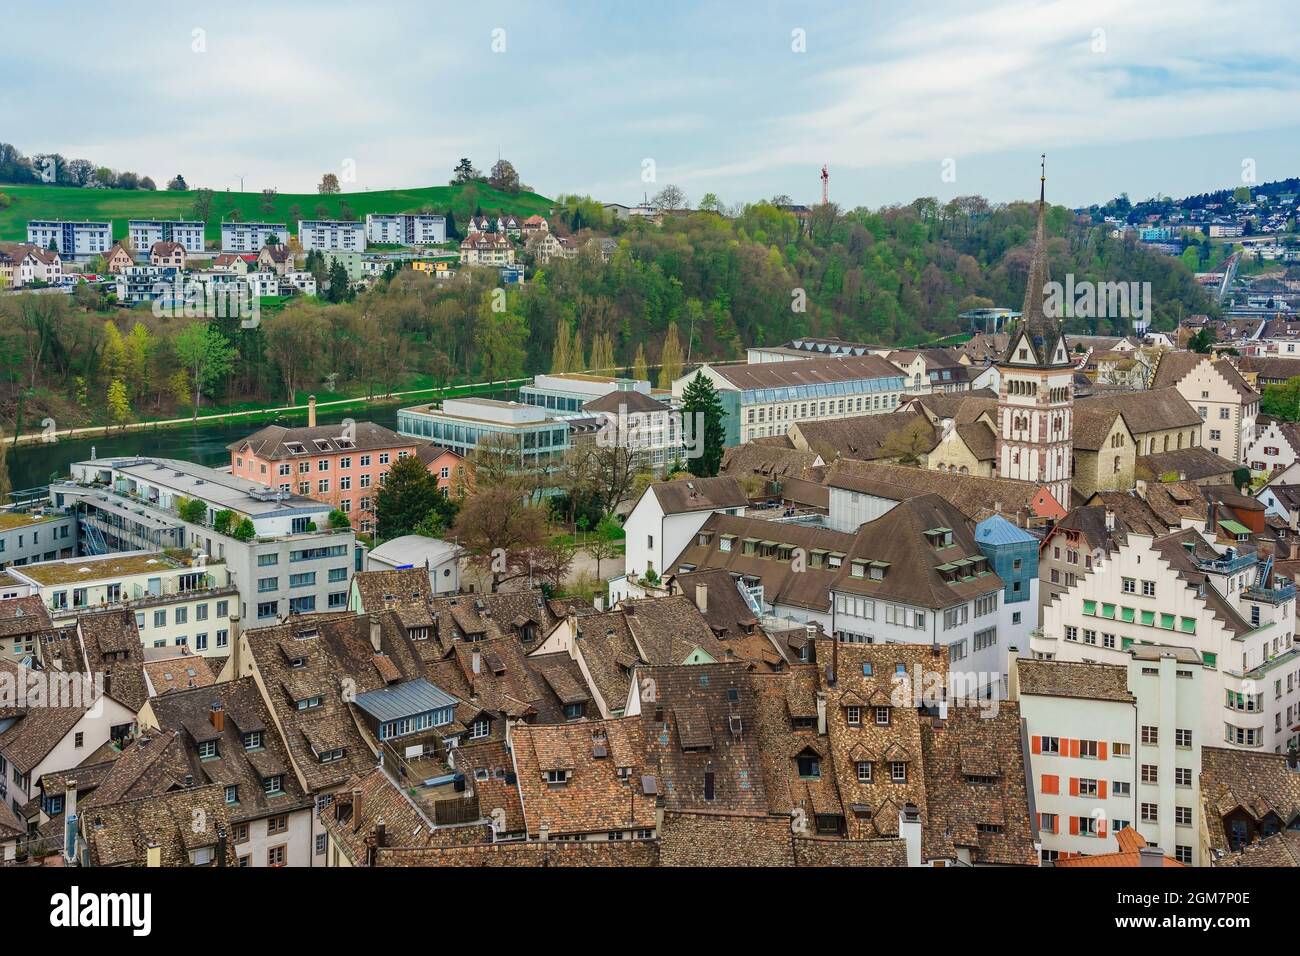 Vue panoramique sur la vieille ville de Schaffhausen, Suisse depuis la forteresse de Munot. Canton suisse de Schaffhausen dans le nord de la Suisse Banque D'Images